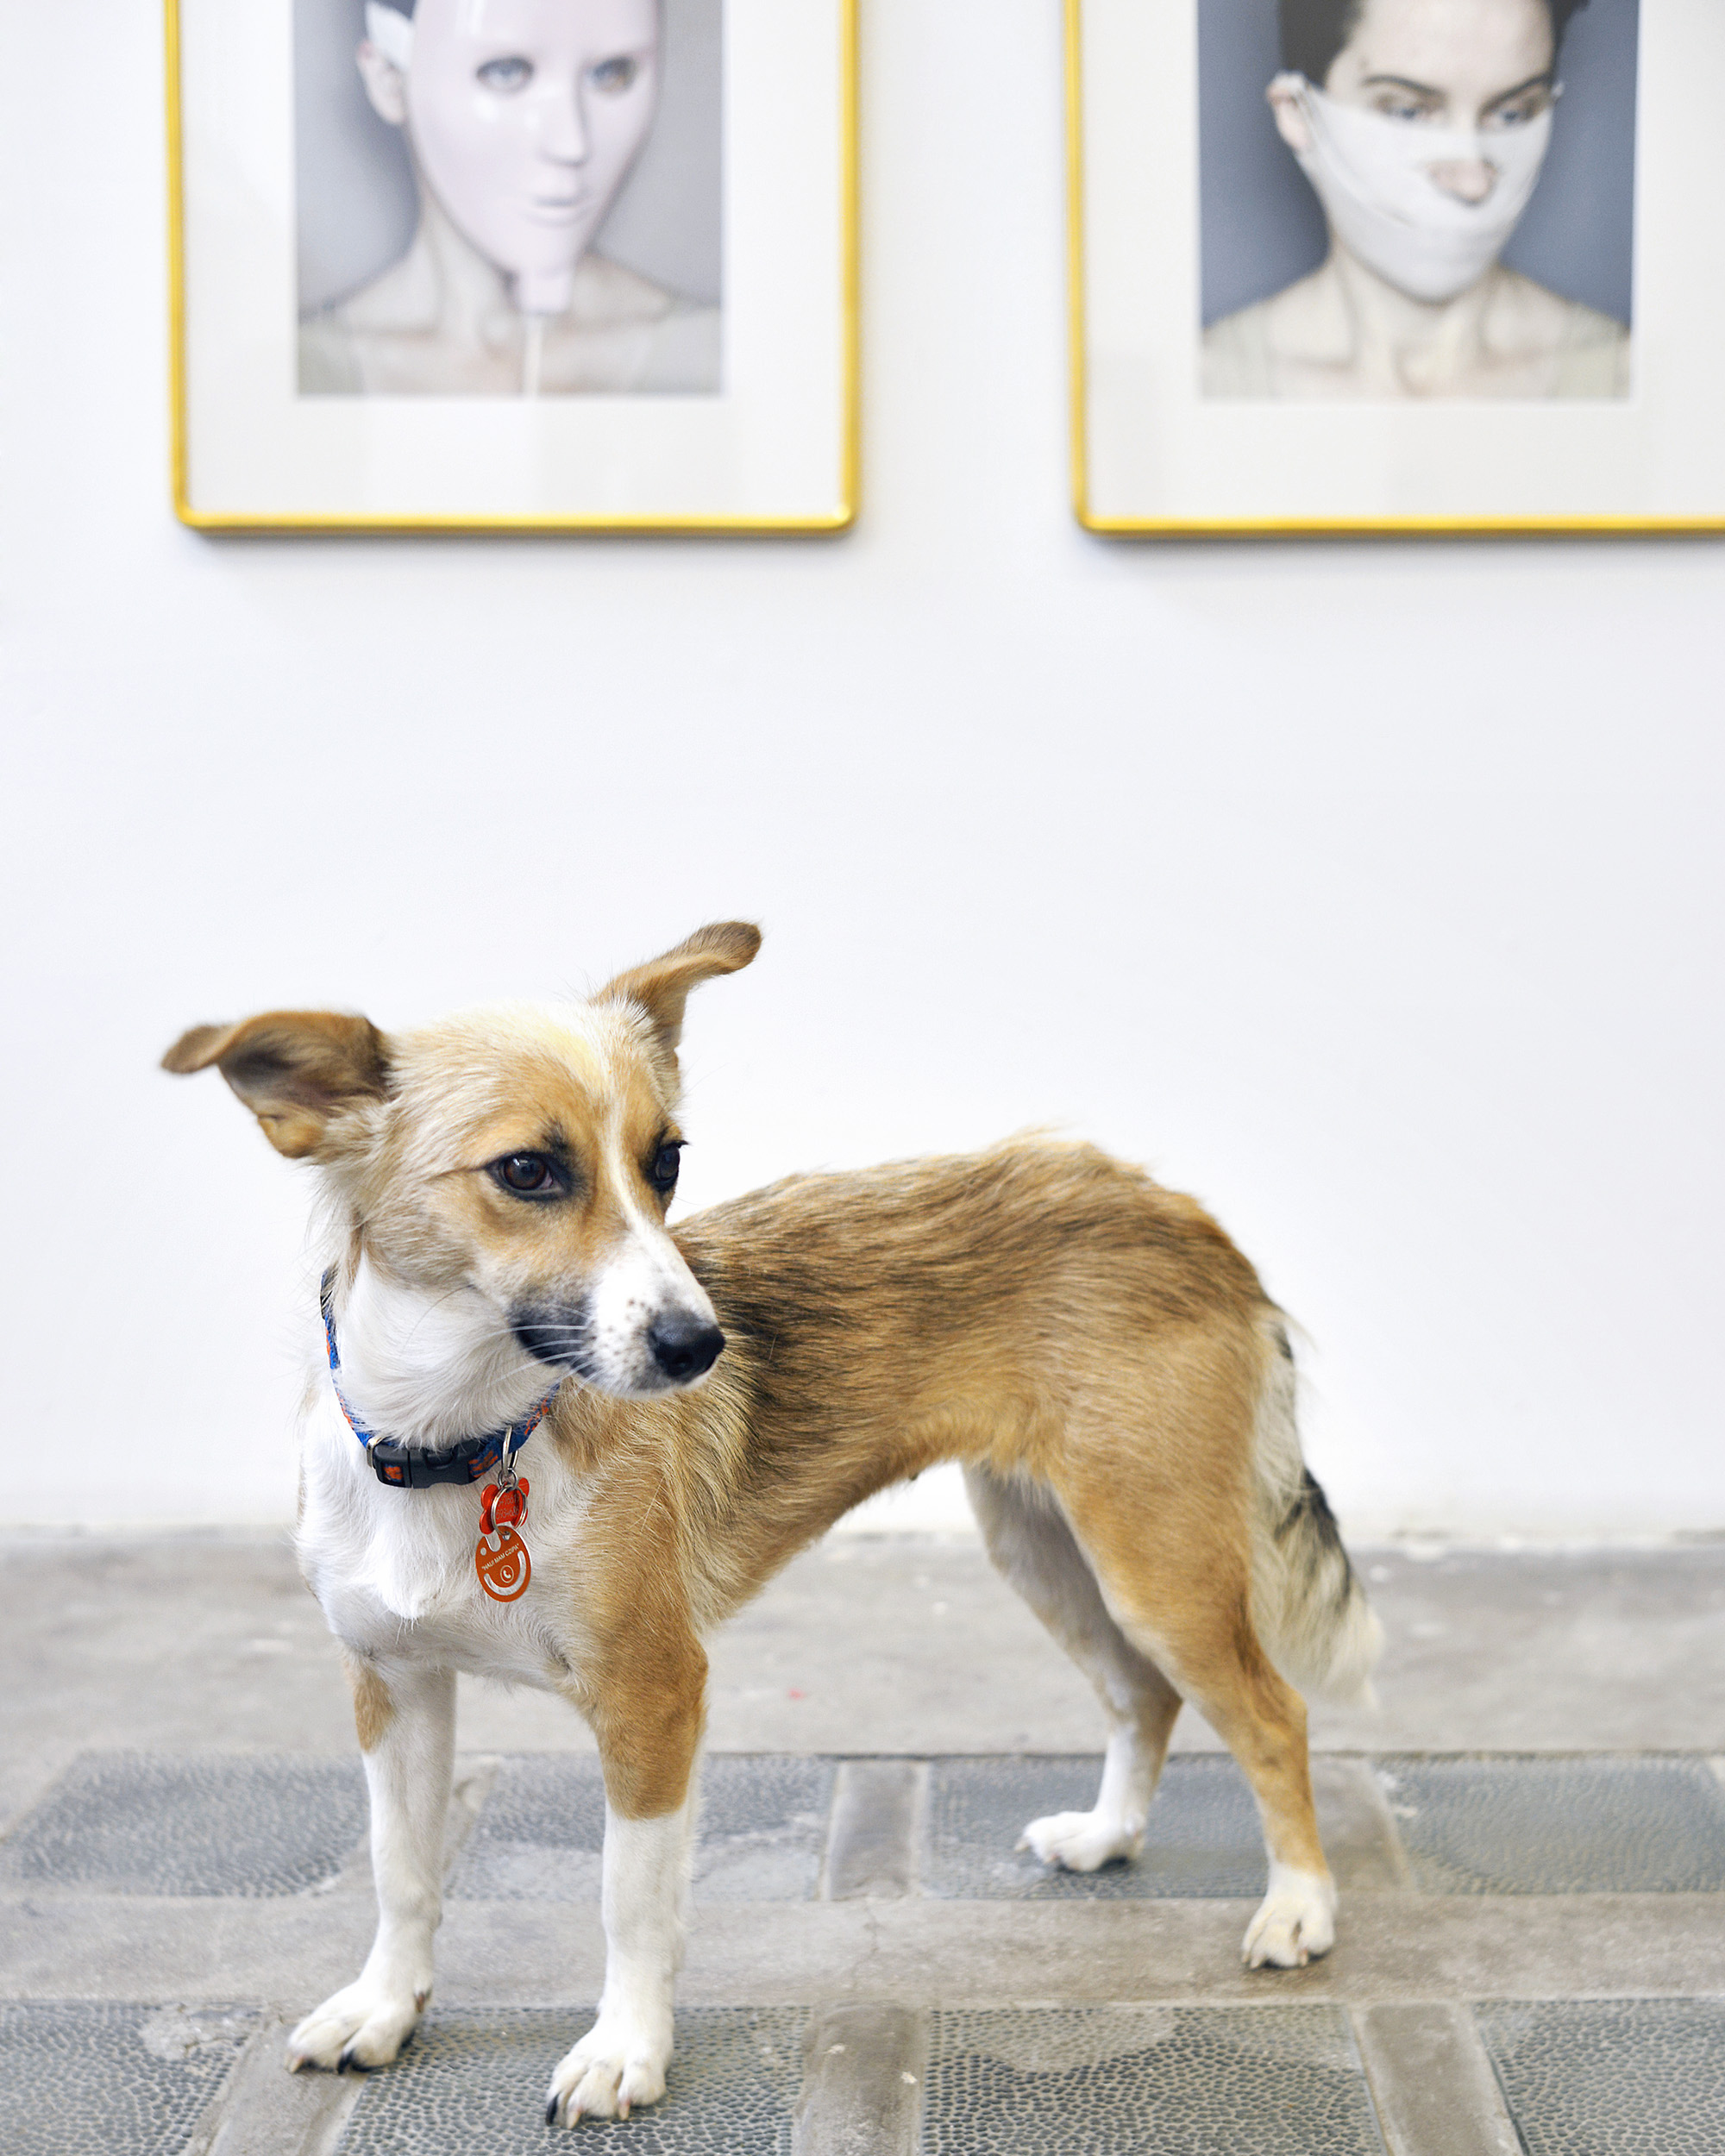 Zdjęcie psa w galerii sztuki Raster z fotografiami Anety Grzeszykowskiej w tle